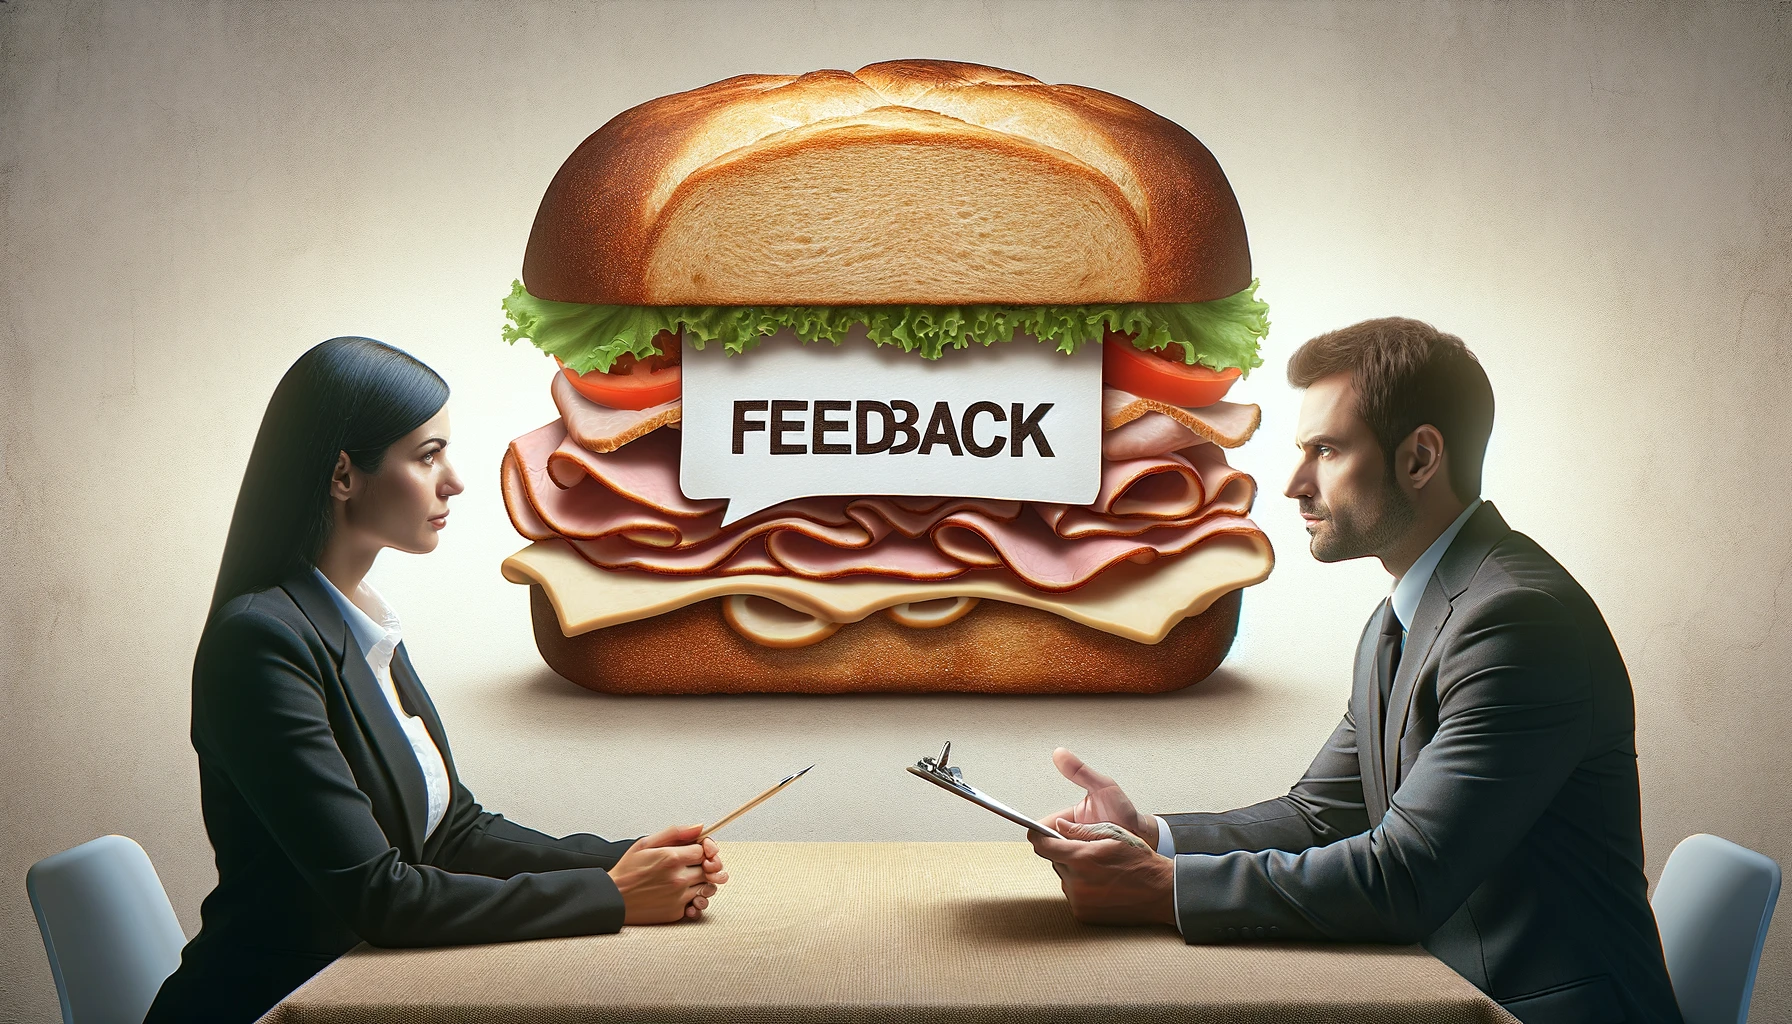 La Scienza del Feedback: Perché il “panino” non funziona più?